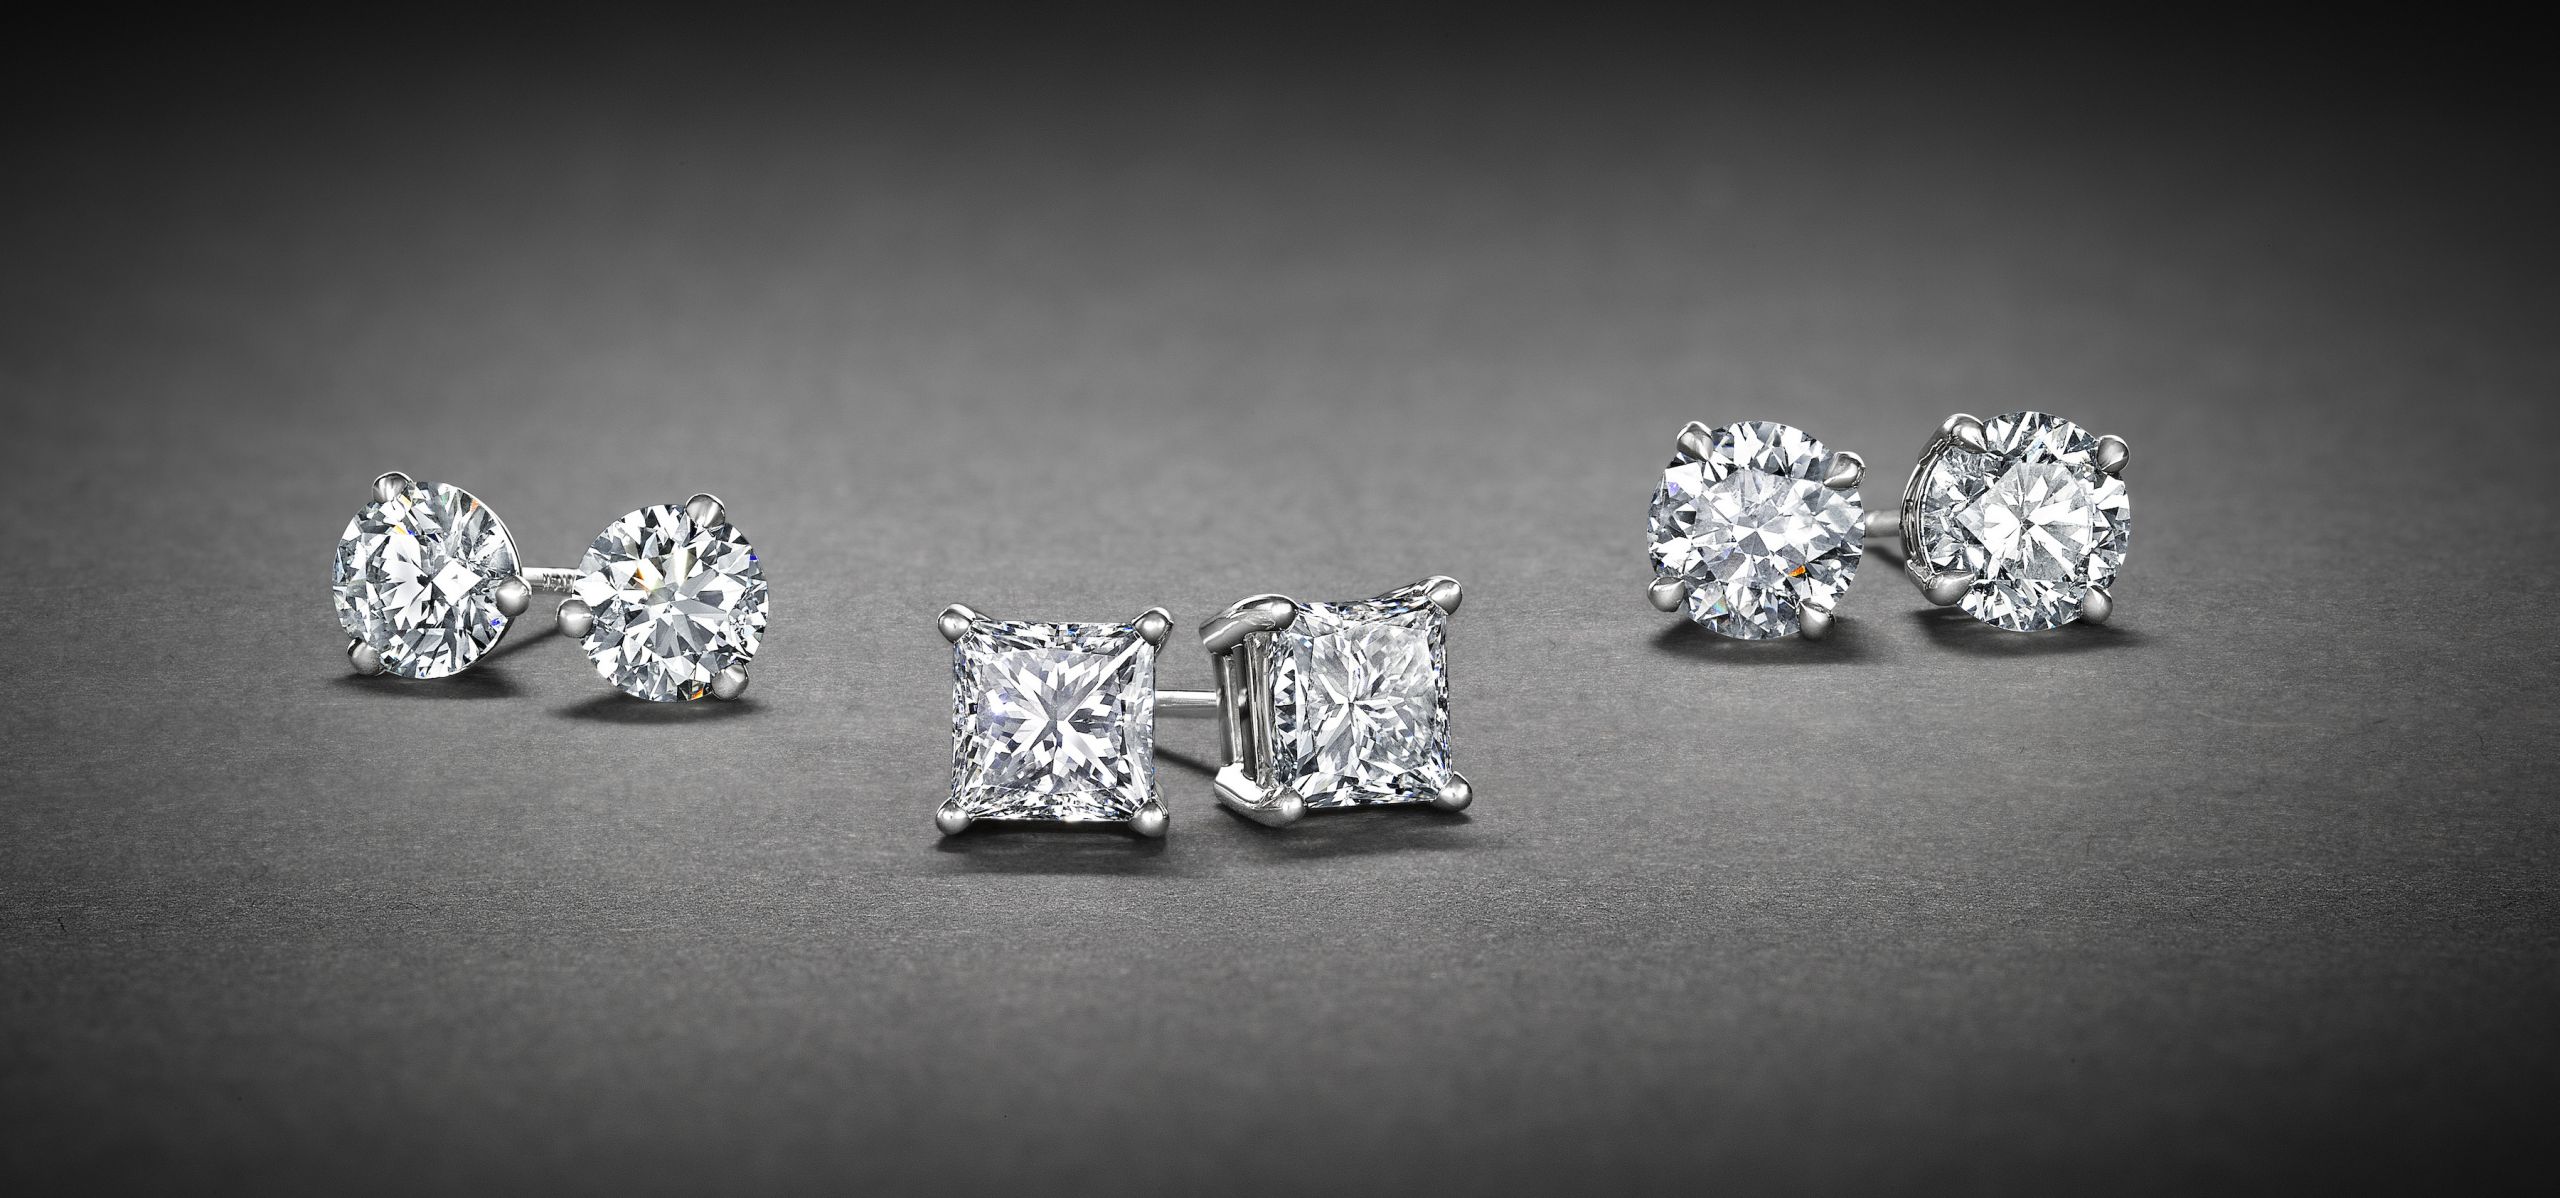 Diamond Earring For Men
 Diamond earrings for men